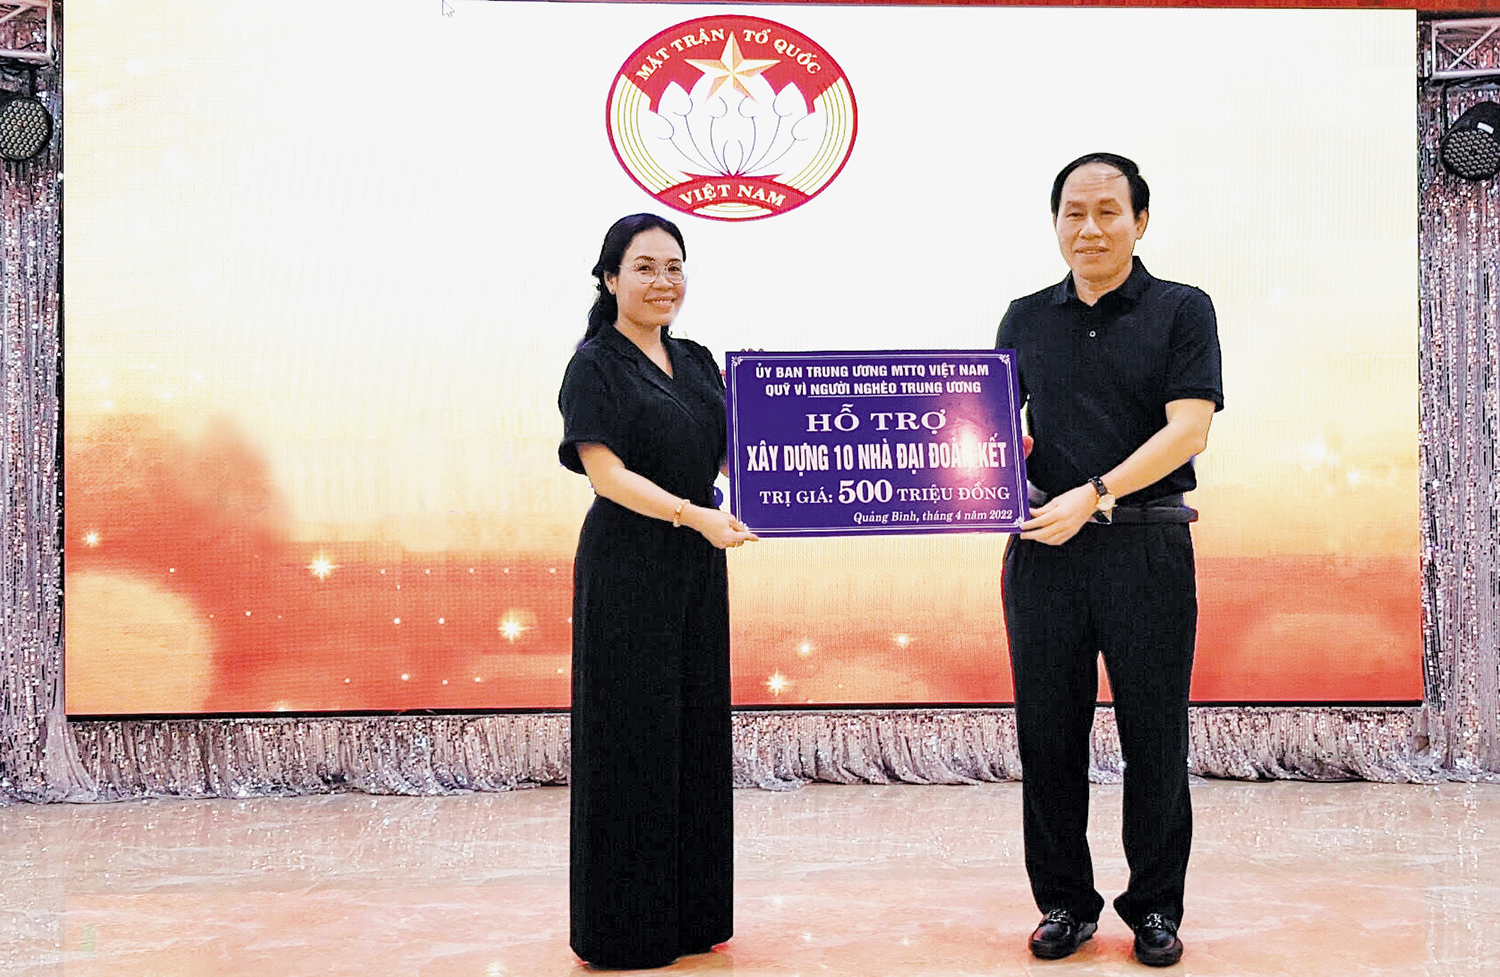 Ủy ban Trung ương MTTQVN hỗ trợ Quảng Bình 10 nhà "Đại đoàn kết"